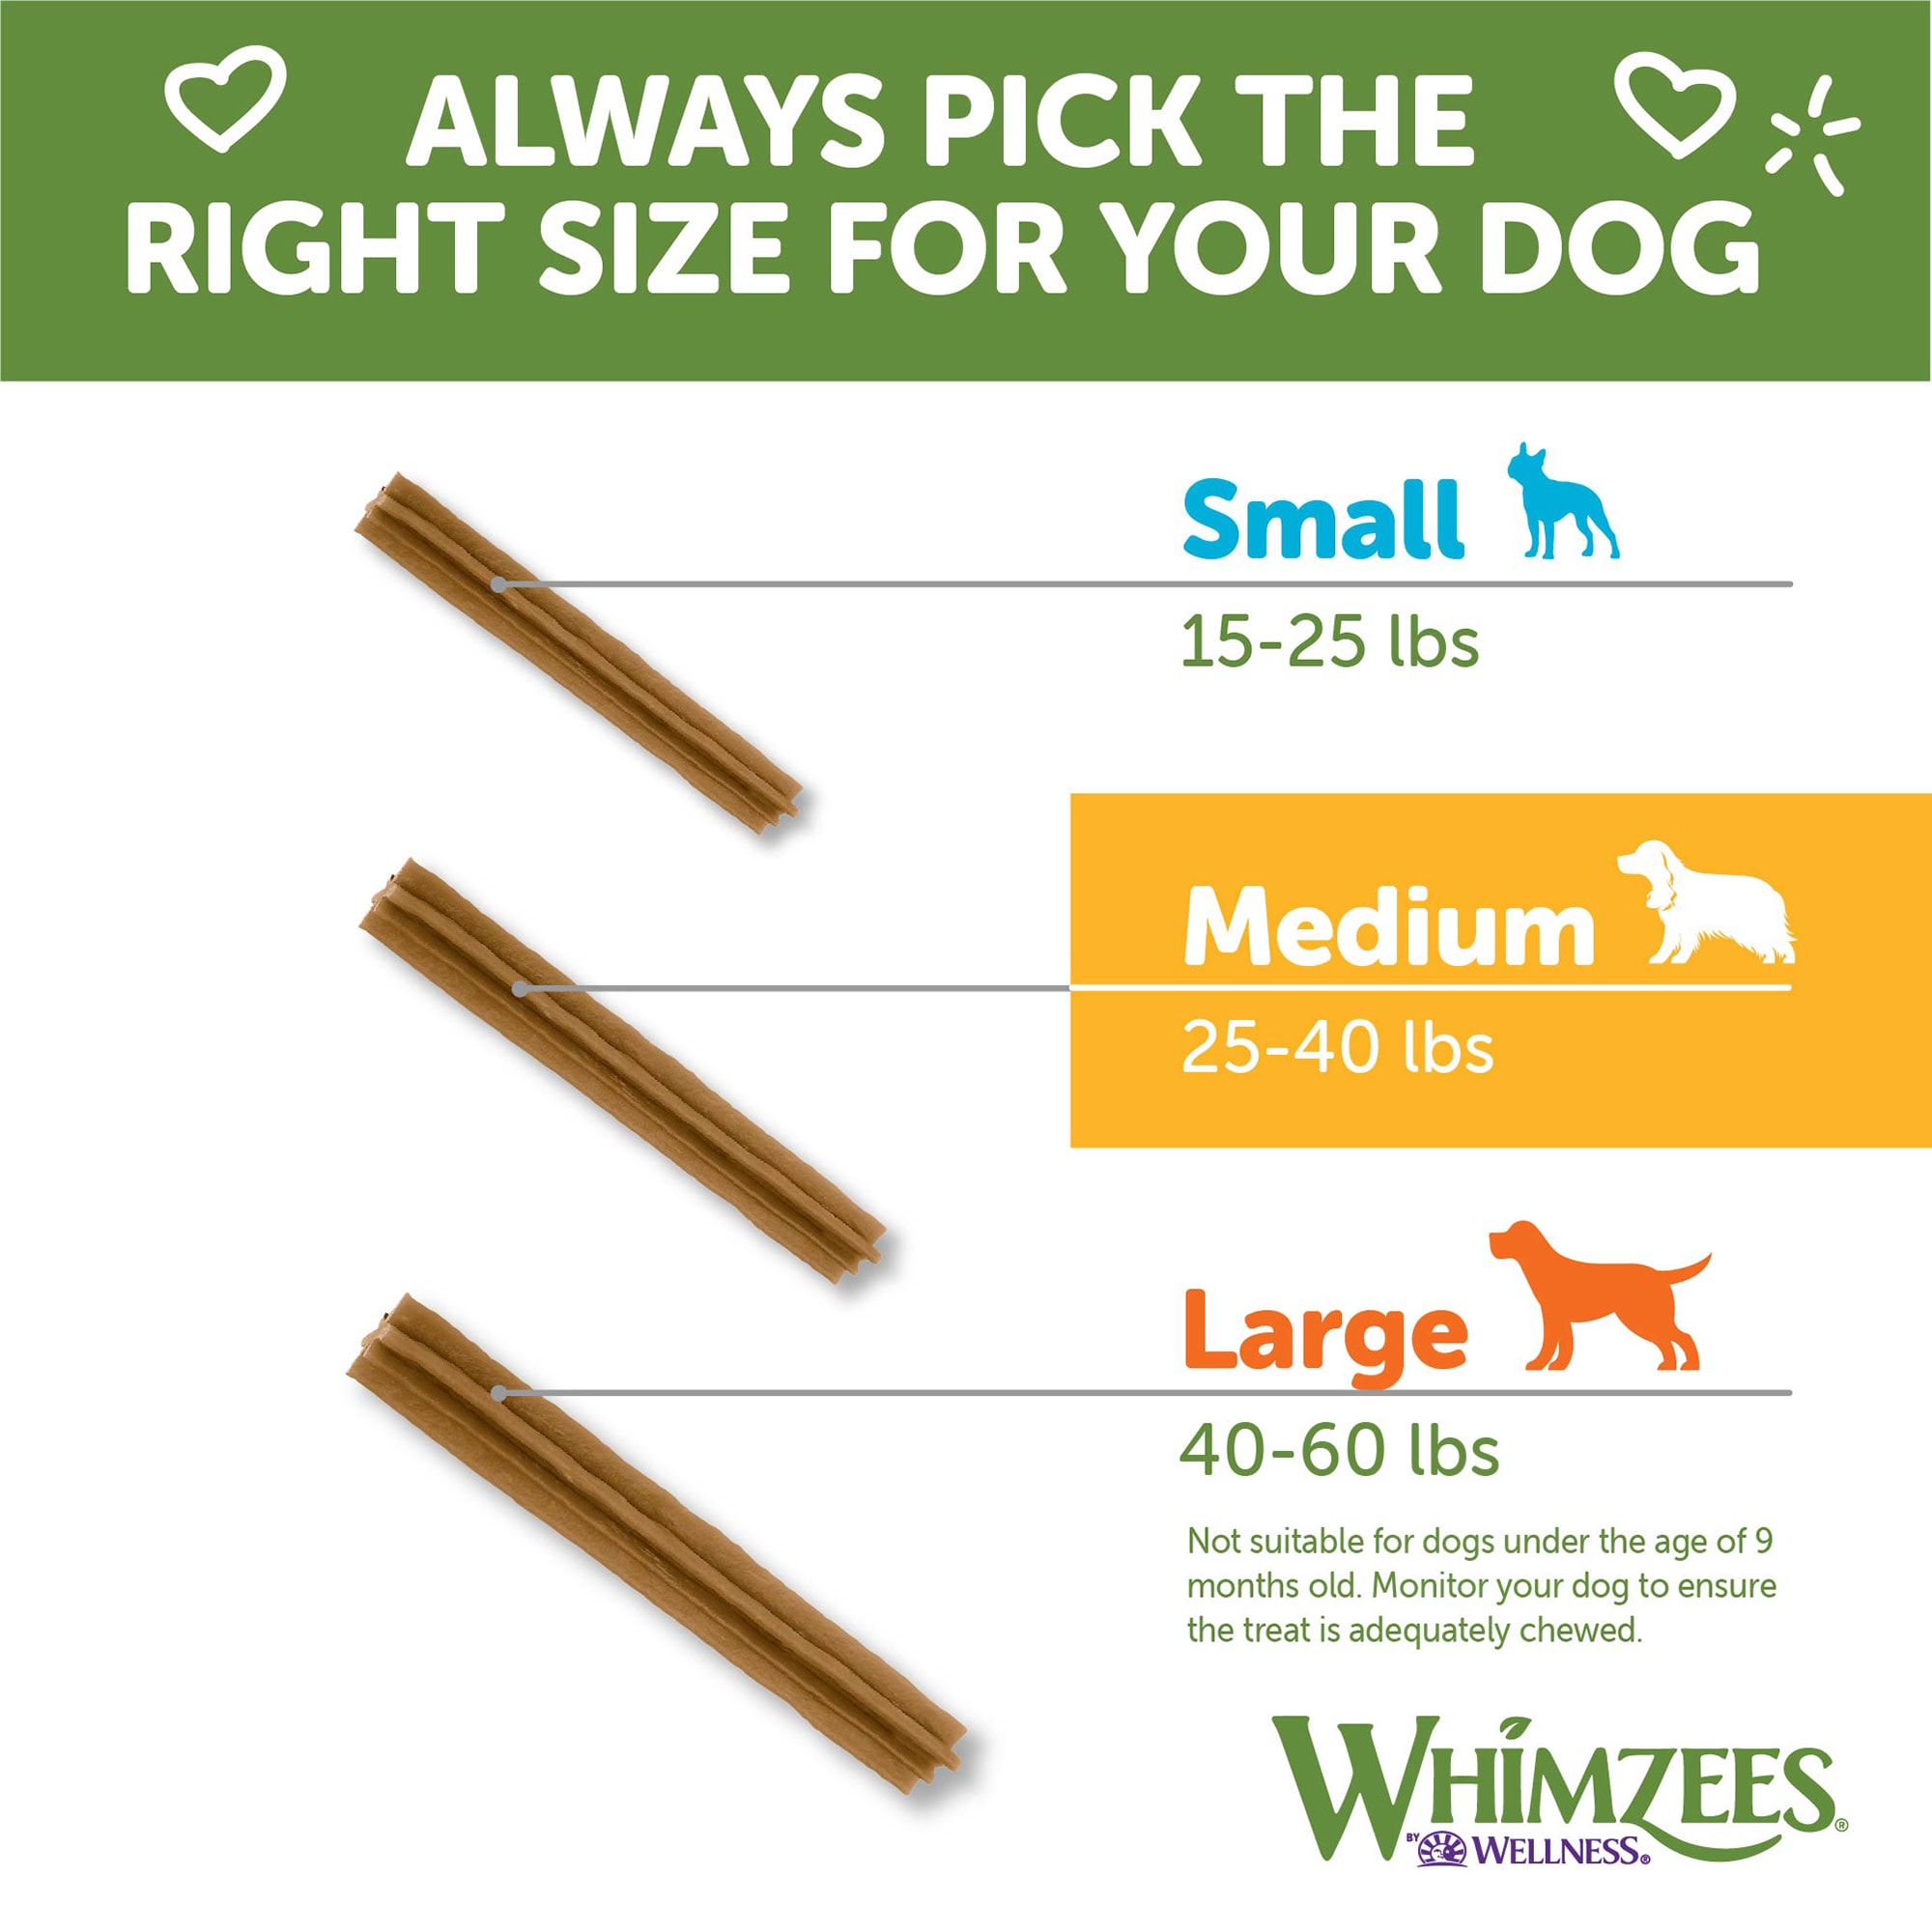 Whimzees Natural Dental Dog Treats Chews Variety Small Medium Large Box Pack NEW 